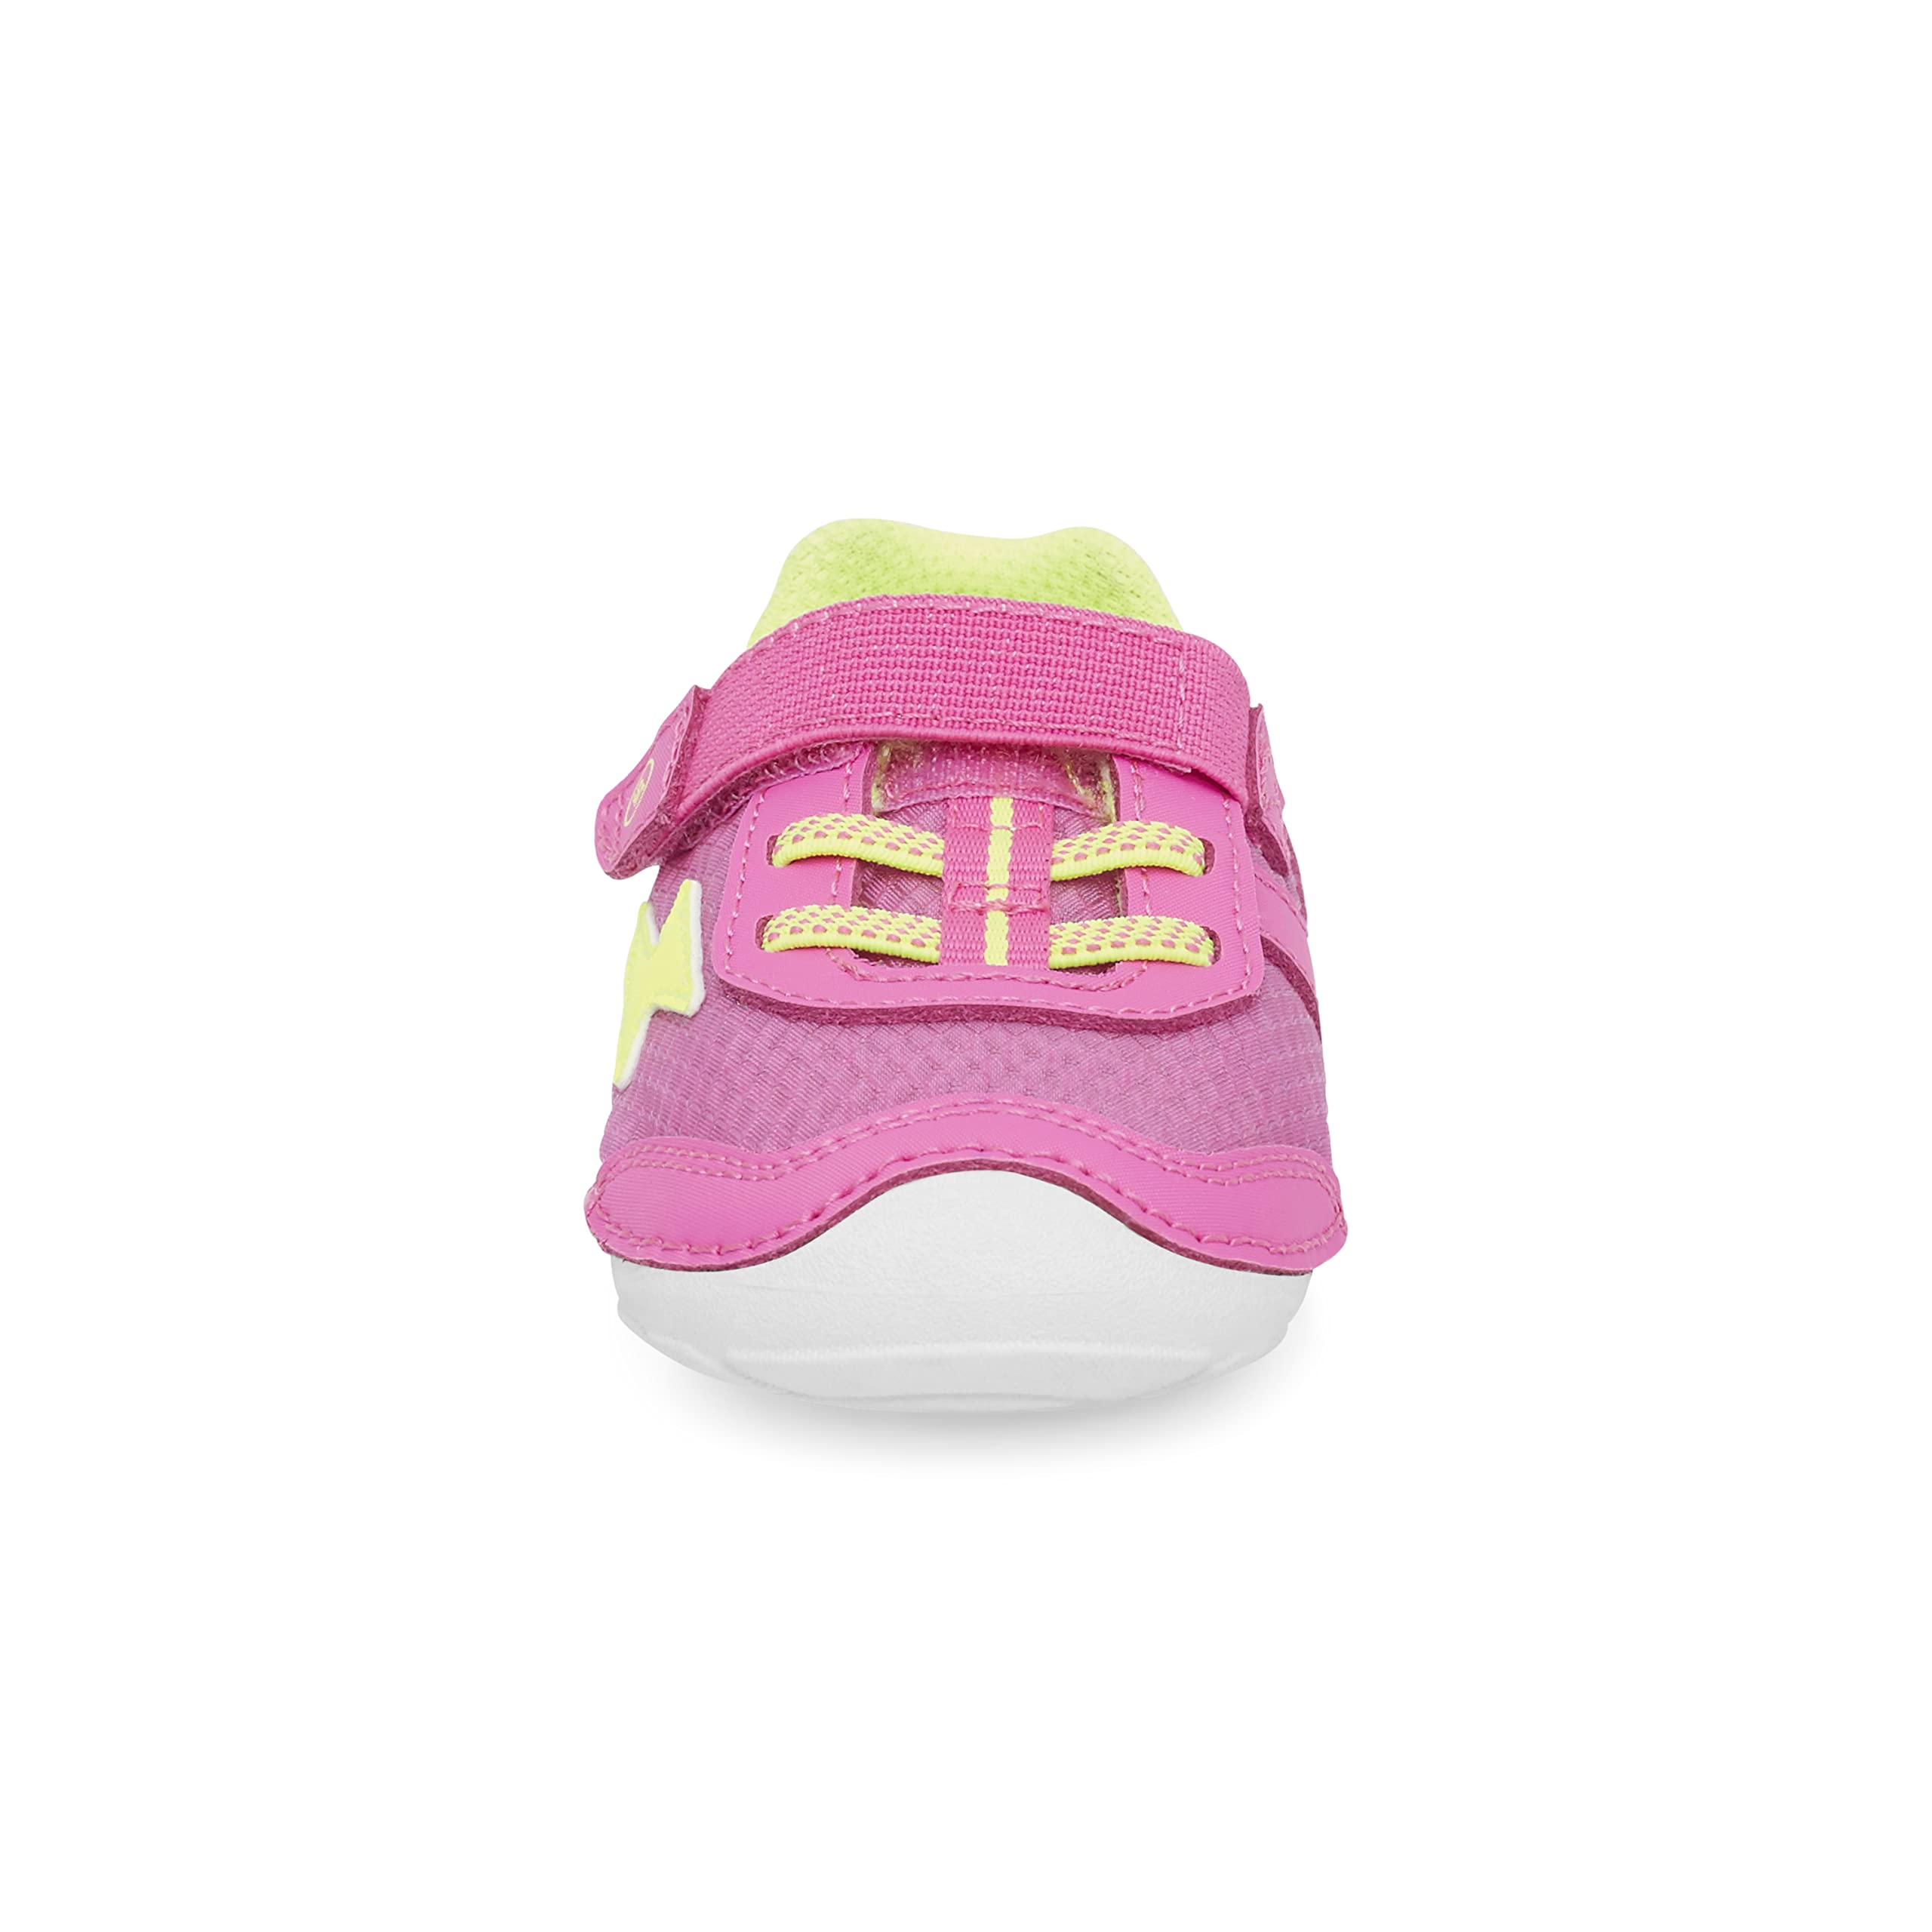 Stride Rite Unisex-Child Soft Motion Zips Runner Sneaker